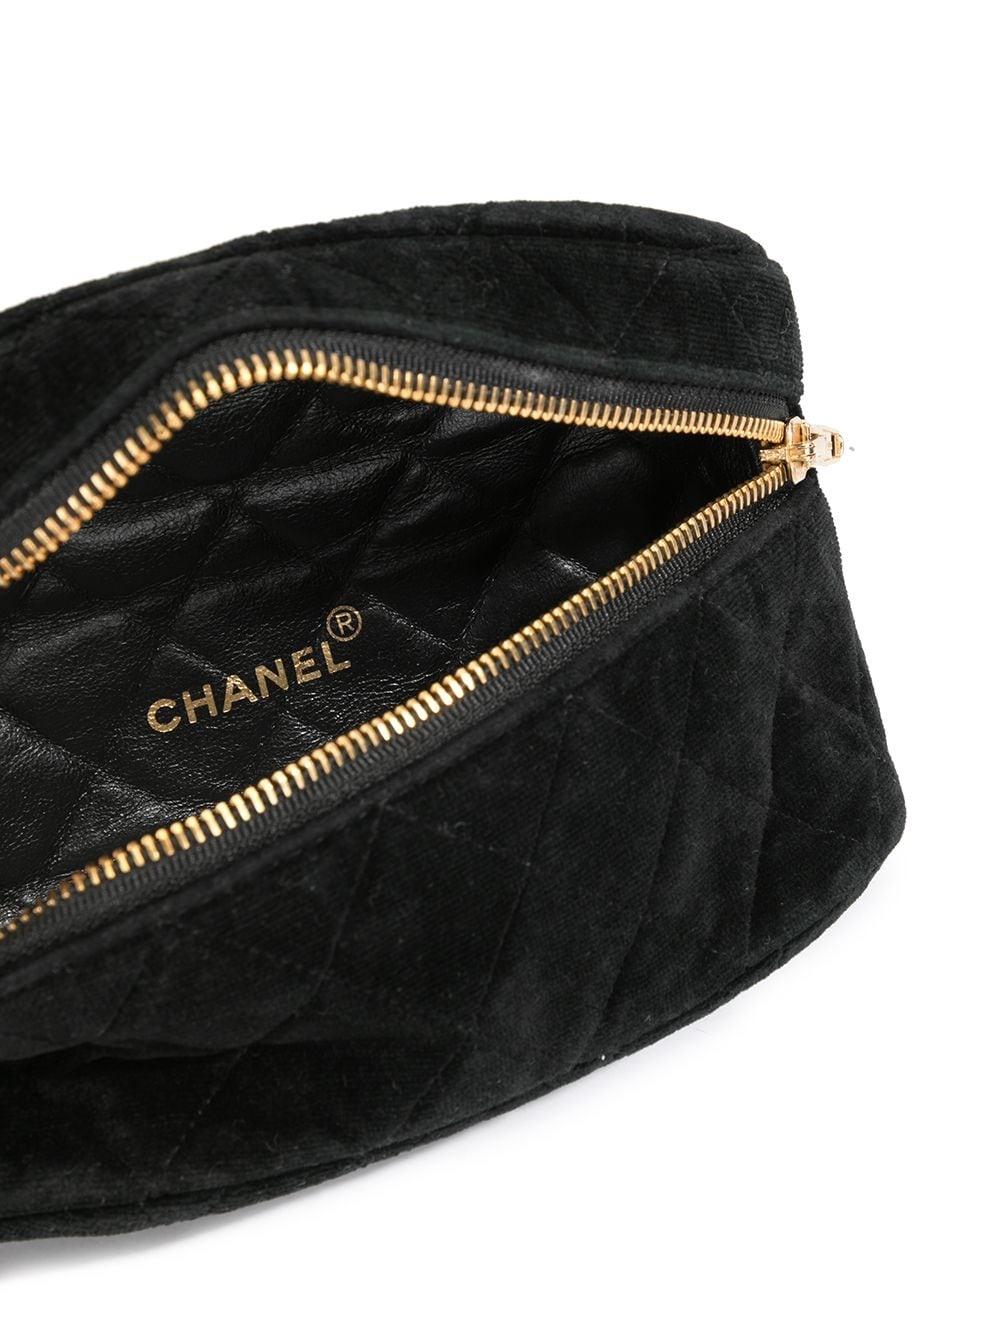 Chanel 1991 Vintage Velvet Quilted Medallion Fanny Pack Waist Belt Bag Rare Bag For Sale 10